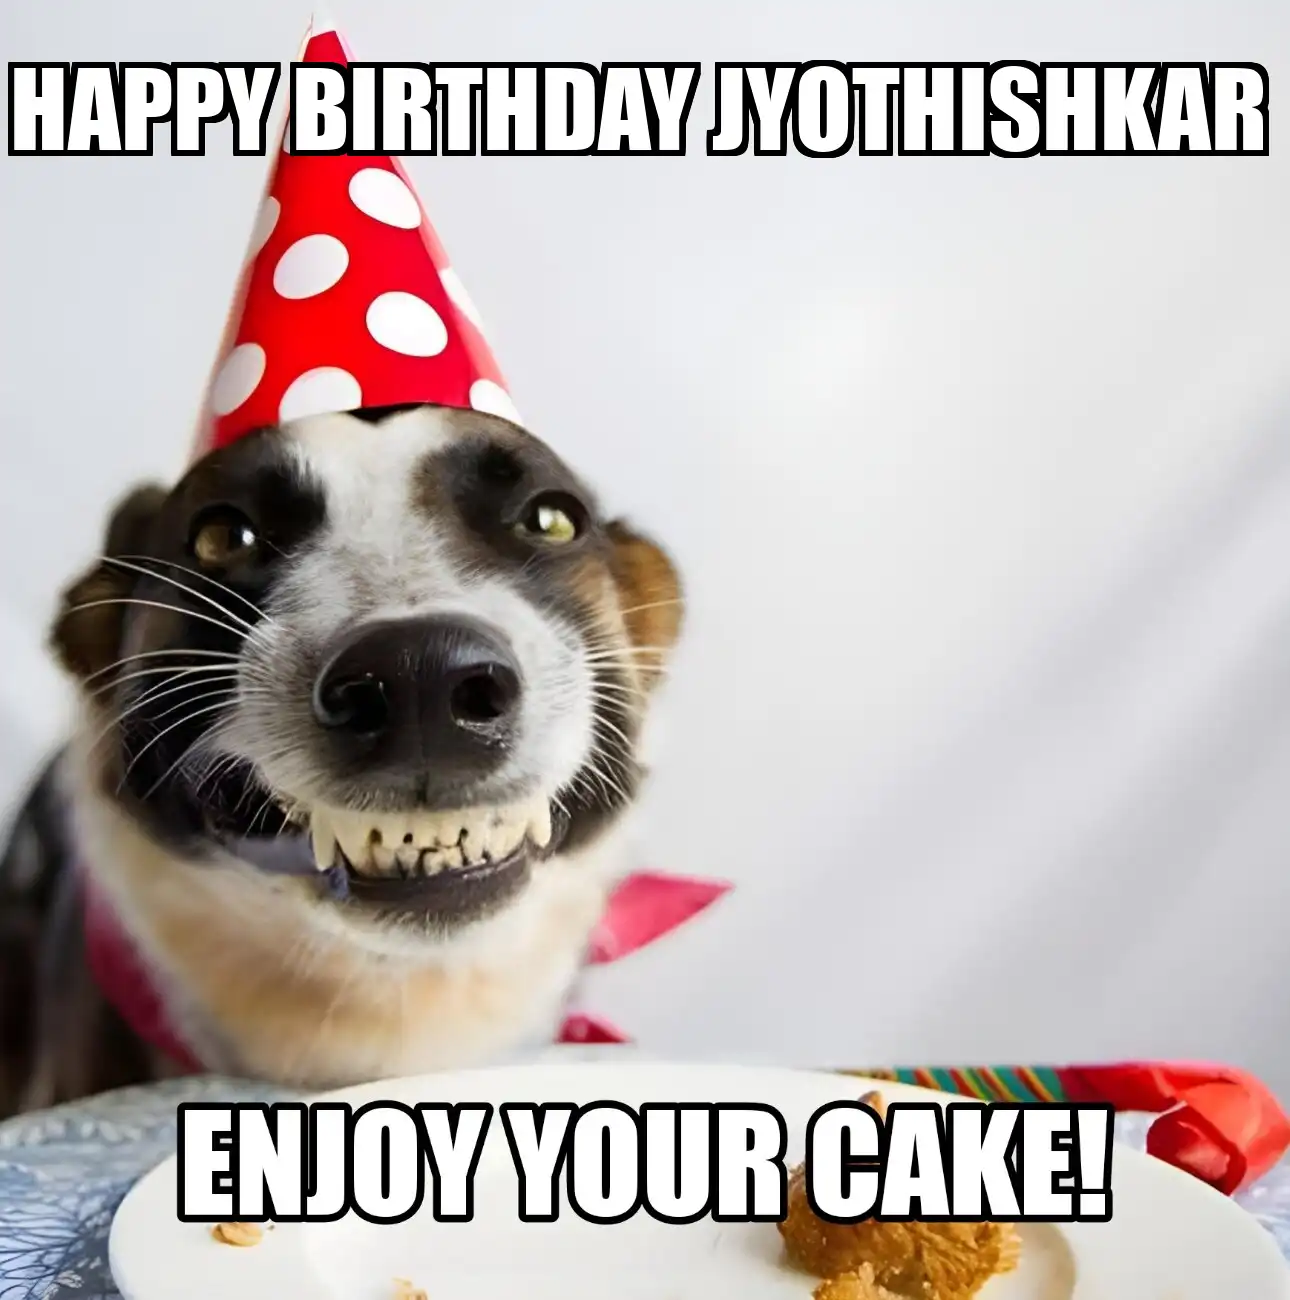 Happy Birthday Jyothishkar Enjoy Your Cake Dog Meme